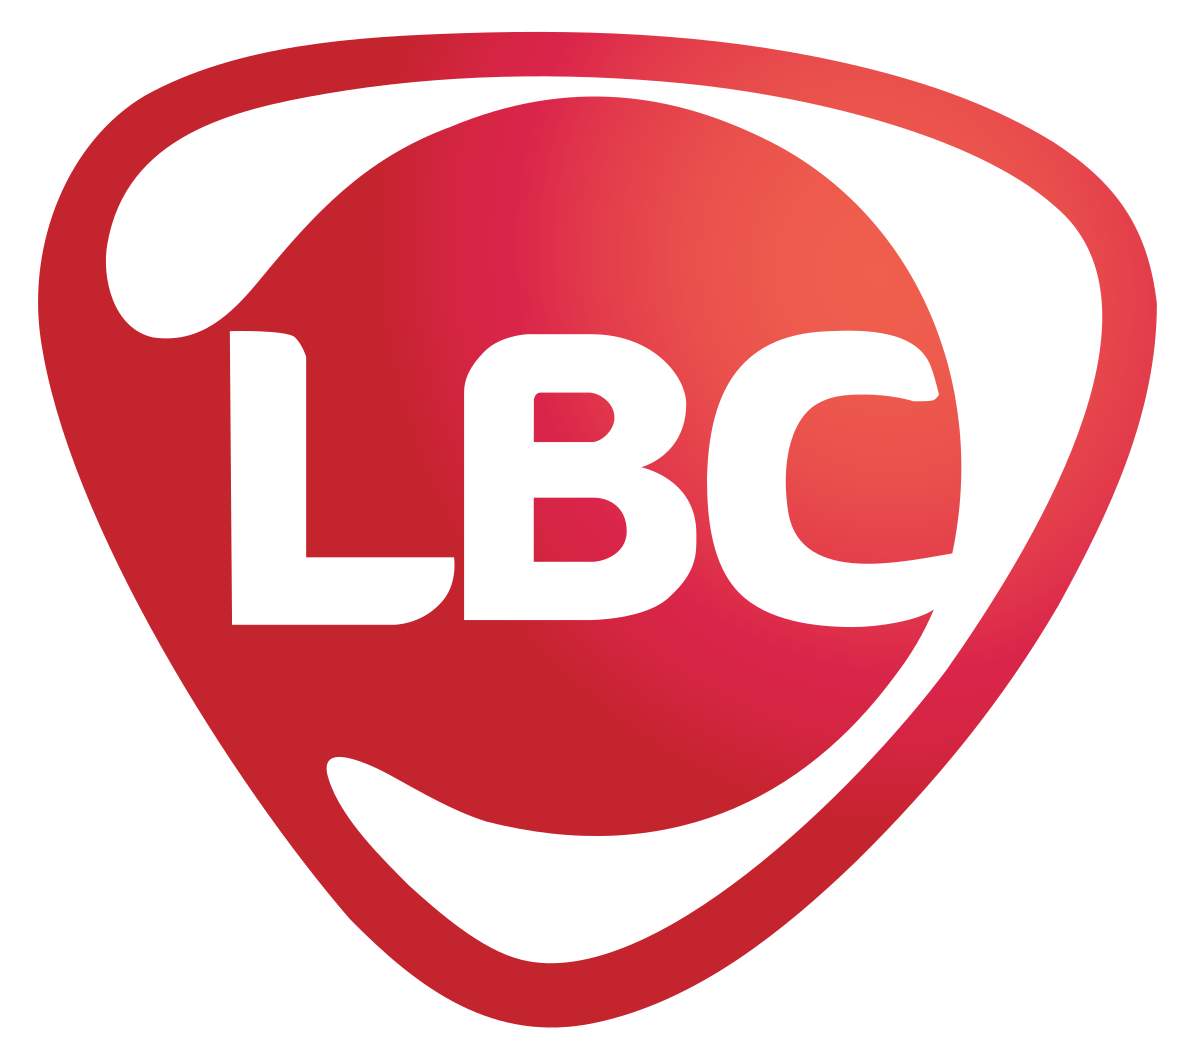 lbc express logo - lbc tracking complaint